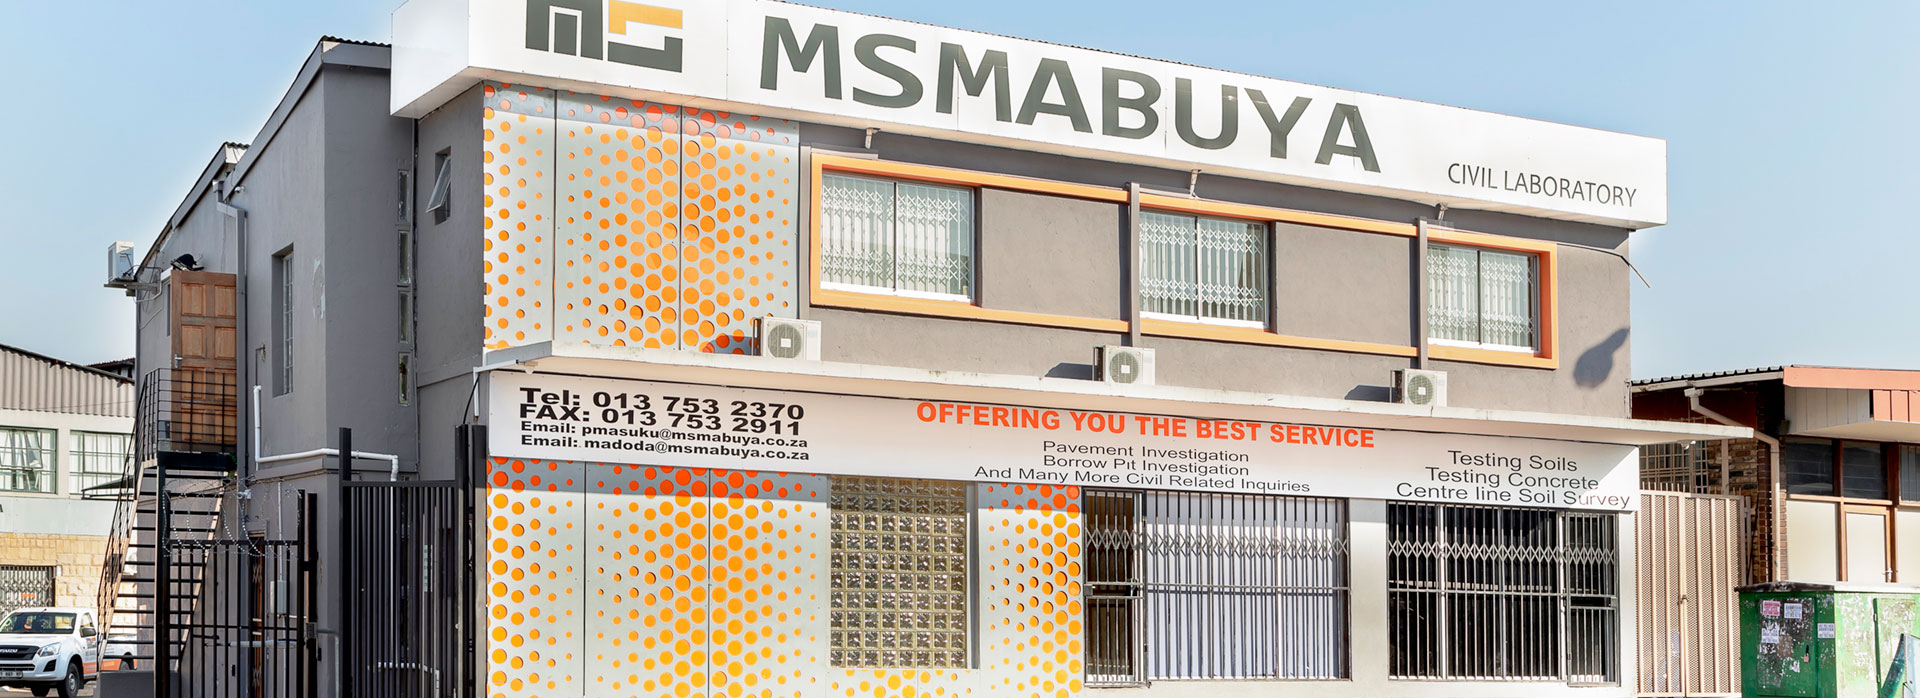 MS Mabuya Building Outside